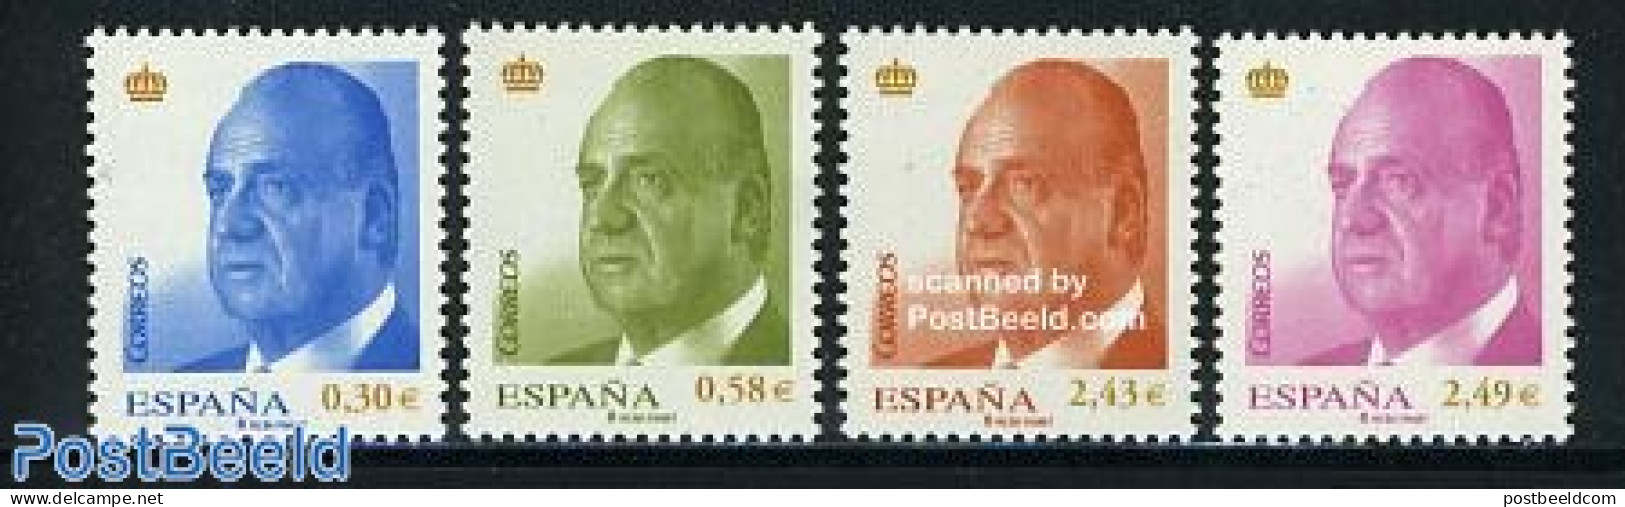 Spain 2007 Definitives, King 4v, Mint NH - Unused Stamps